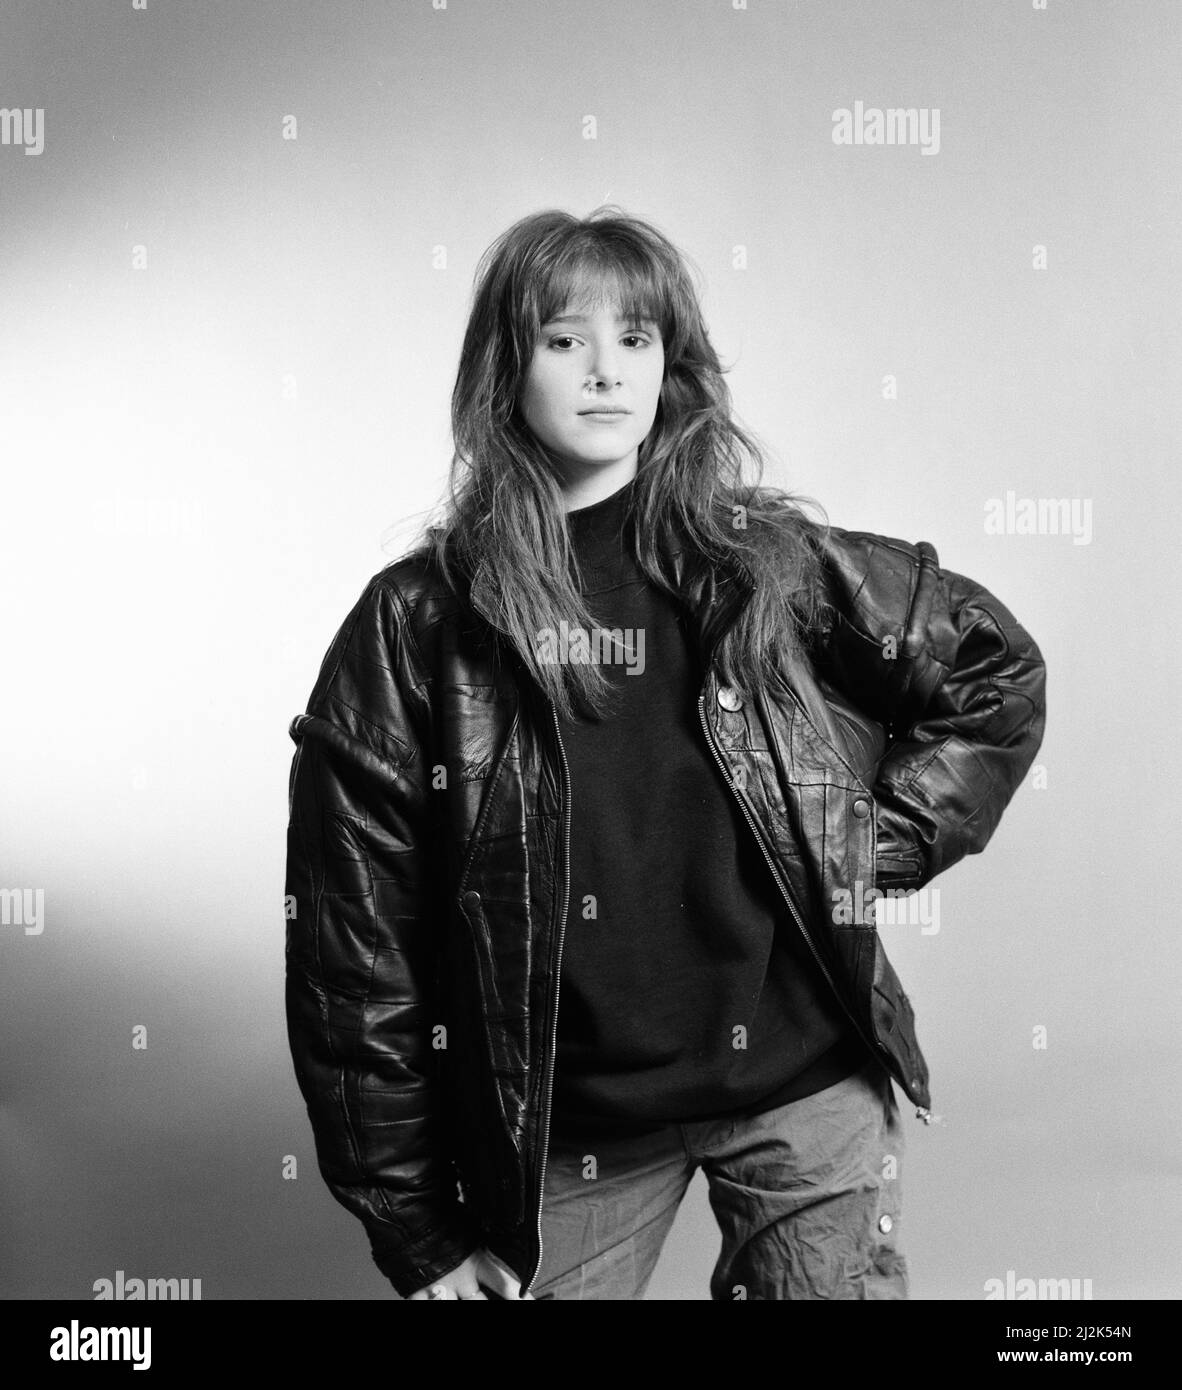 Tiffany, chanteuse américaine âgée de 16 ans, pose pour des photos, Daily Mirror Studio, Londres, jeudi 21st janvier 1988. Tiffany est au Royaume-Uni pour promouvoir son single, je pense que nous sommes seuls maintenant, qui est à jour au numéro 3 dans les graphiques. Banque D'Images